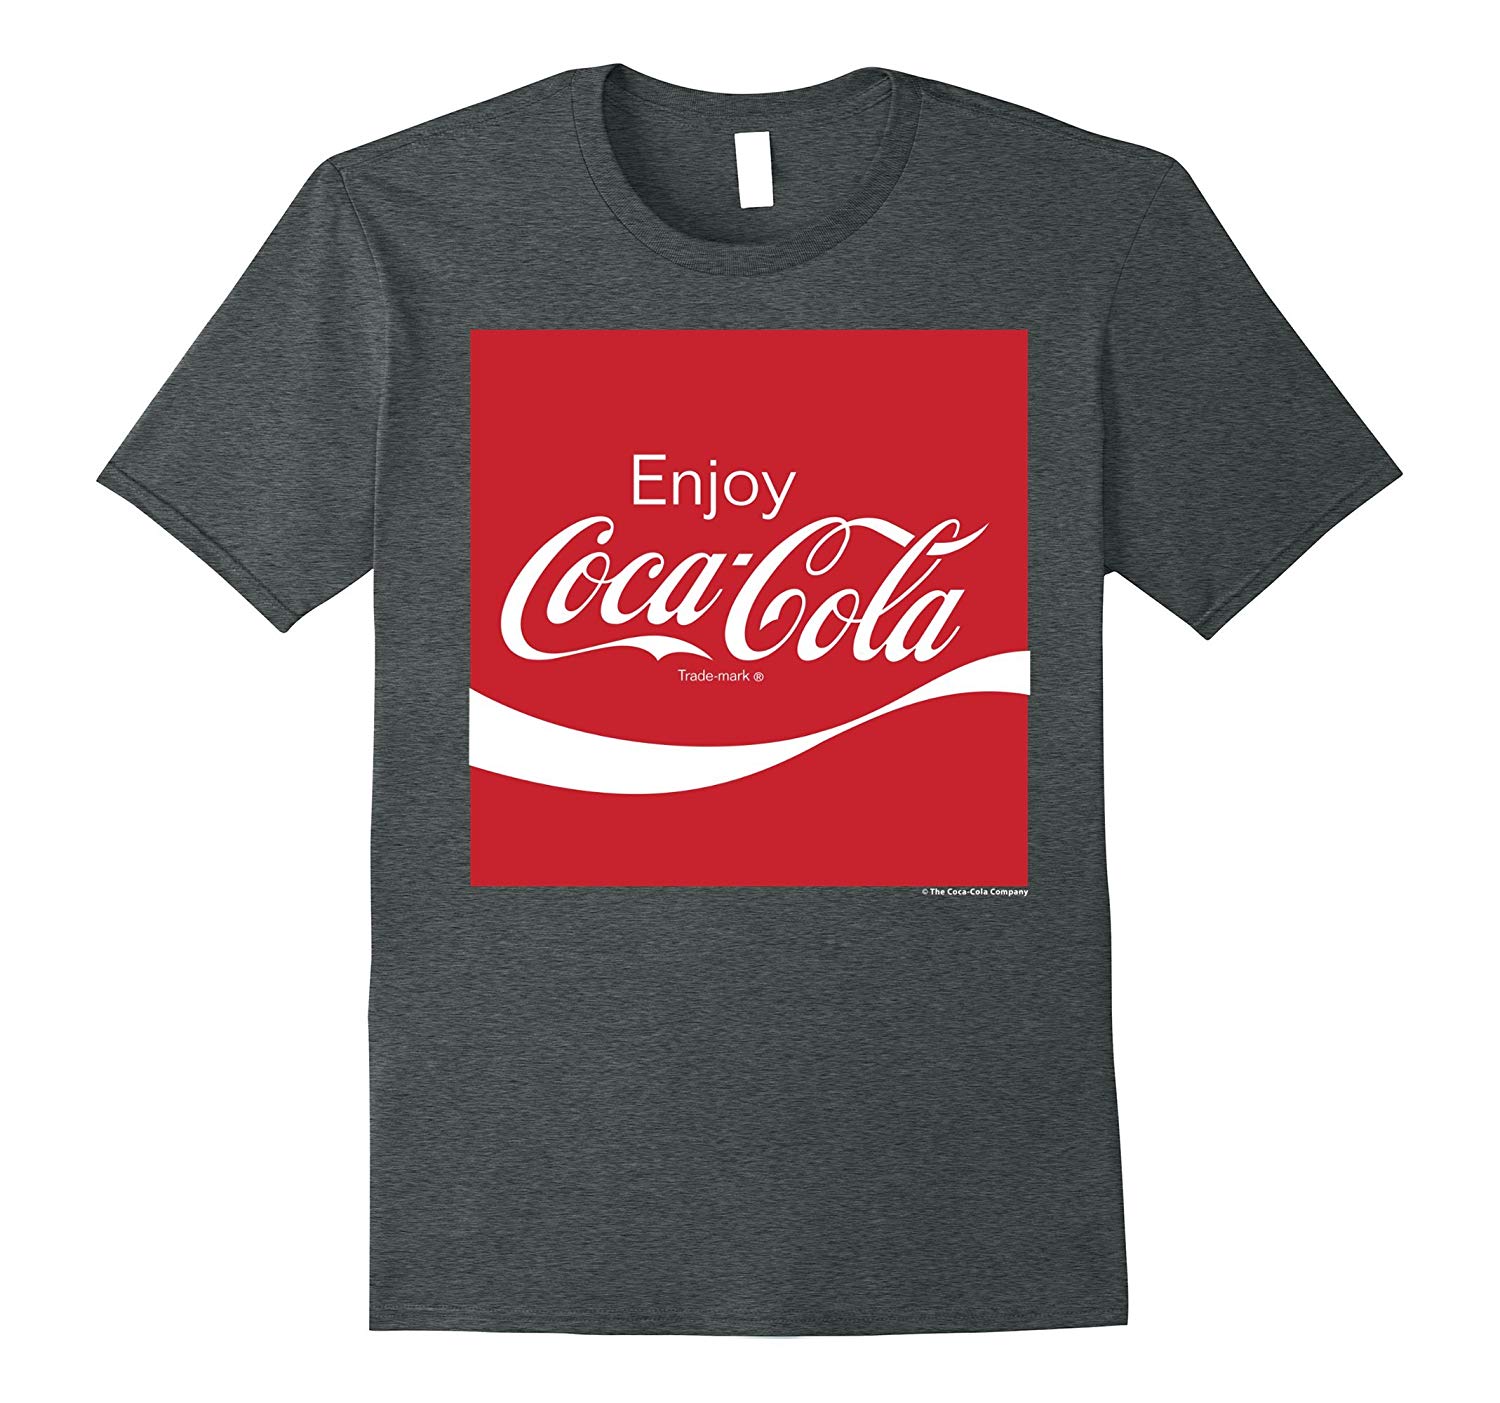 Red Square Company Logo - Coca Cola Red Square Enjoy Logo Graphic T Shirt ANZ